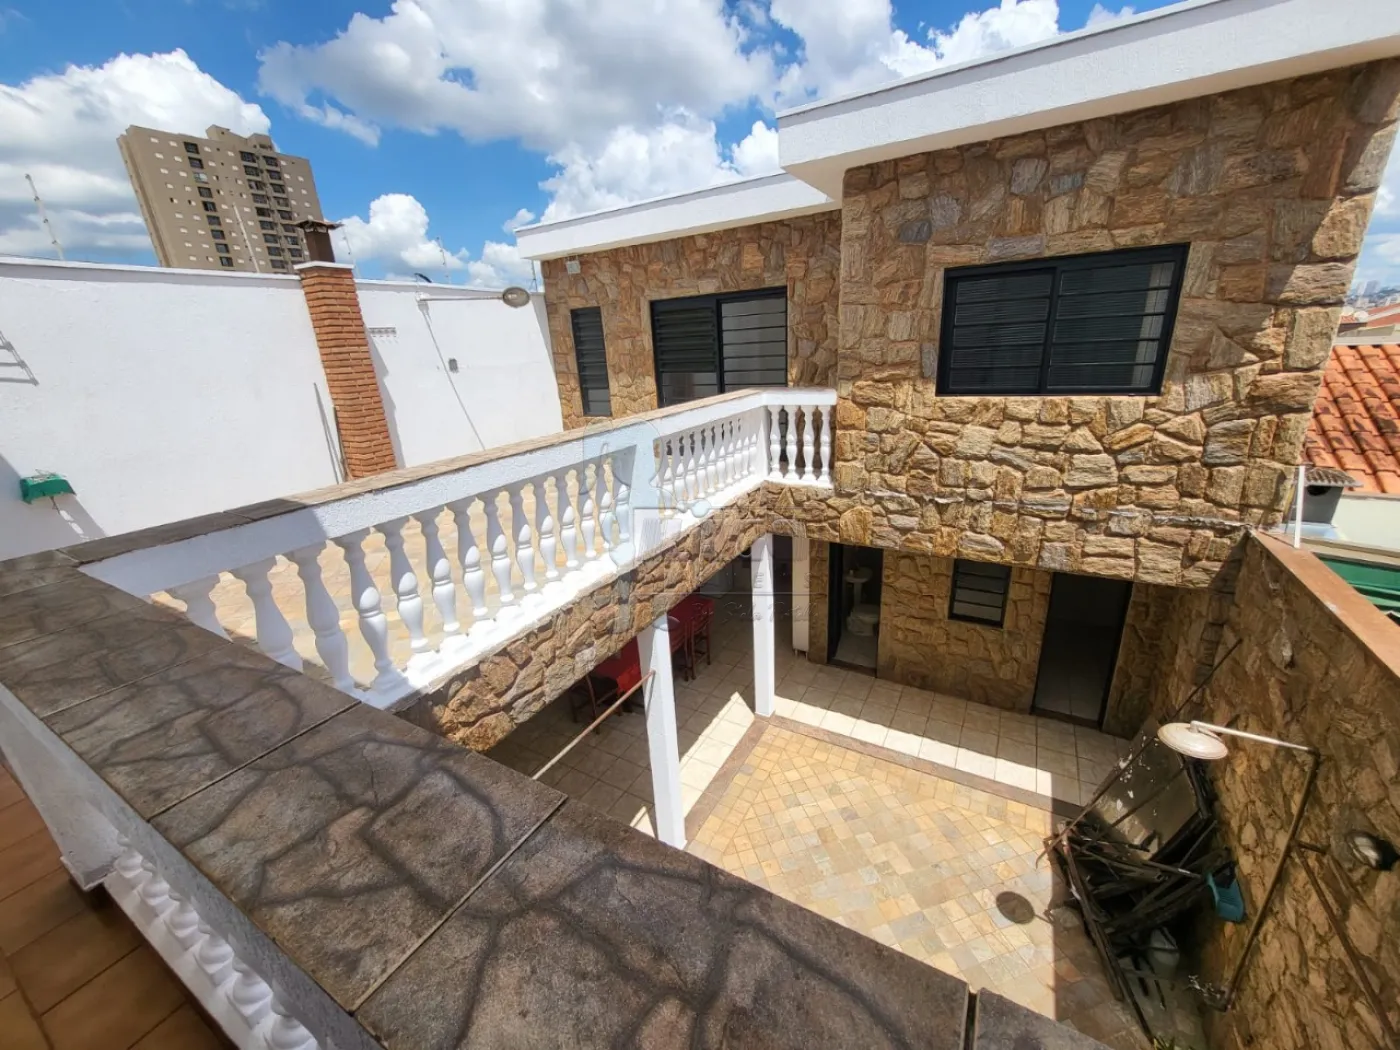 Alugar Casa / Padrão em Ribeirão Preto R$ 4.000,00 - Foto 4